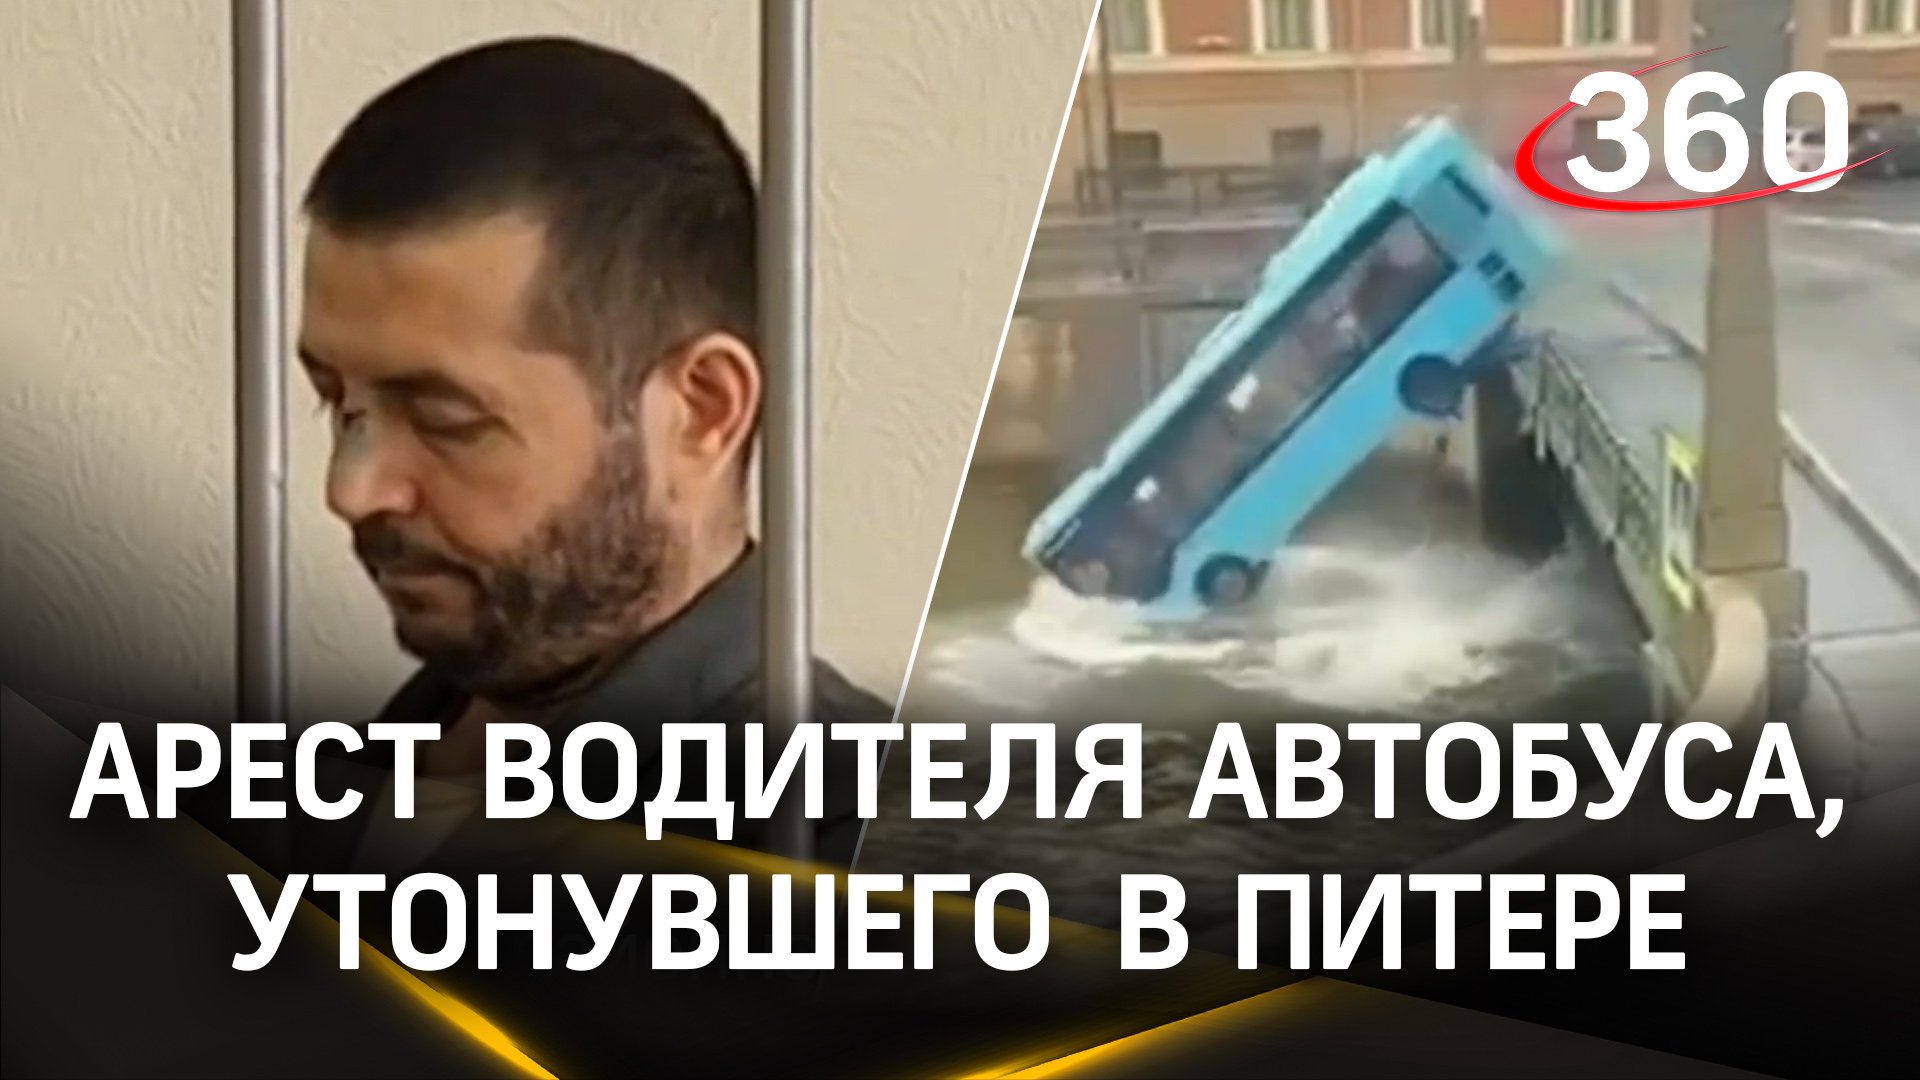 Раскаялся и вину признал: арест водителя автобуса, утонувшего в Петербурге